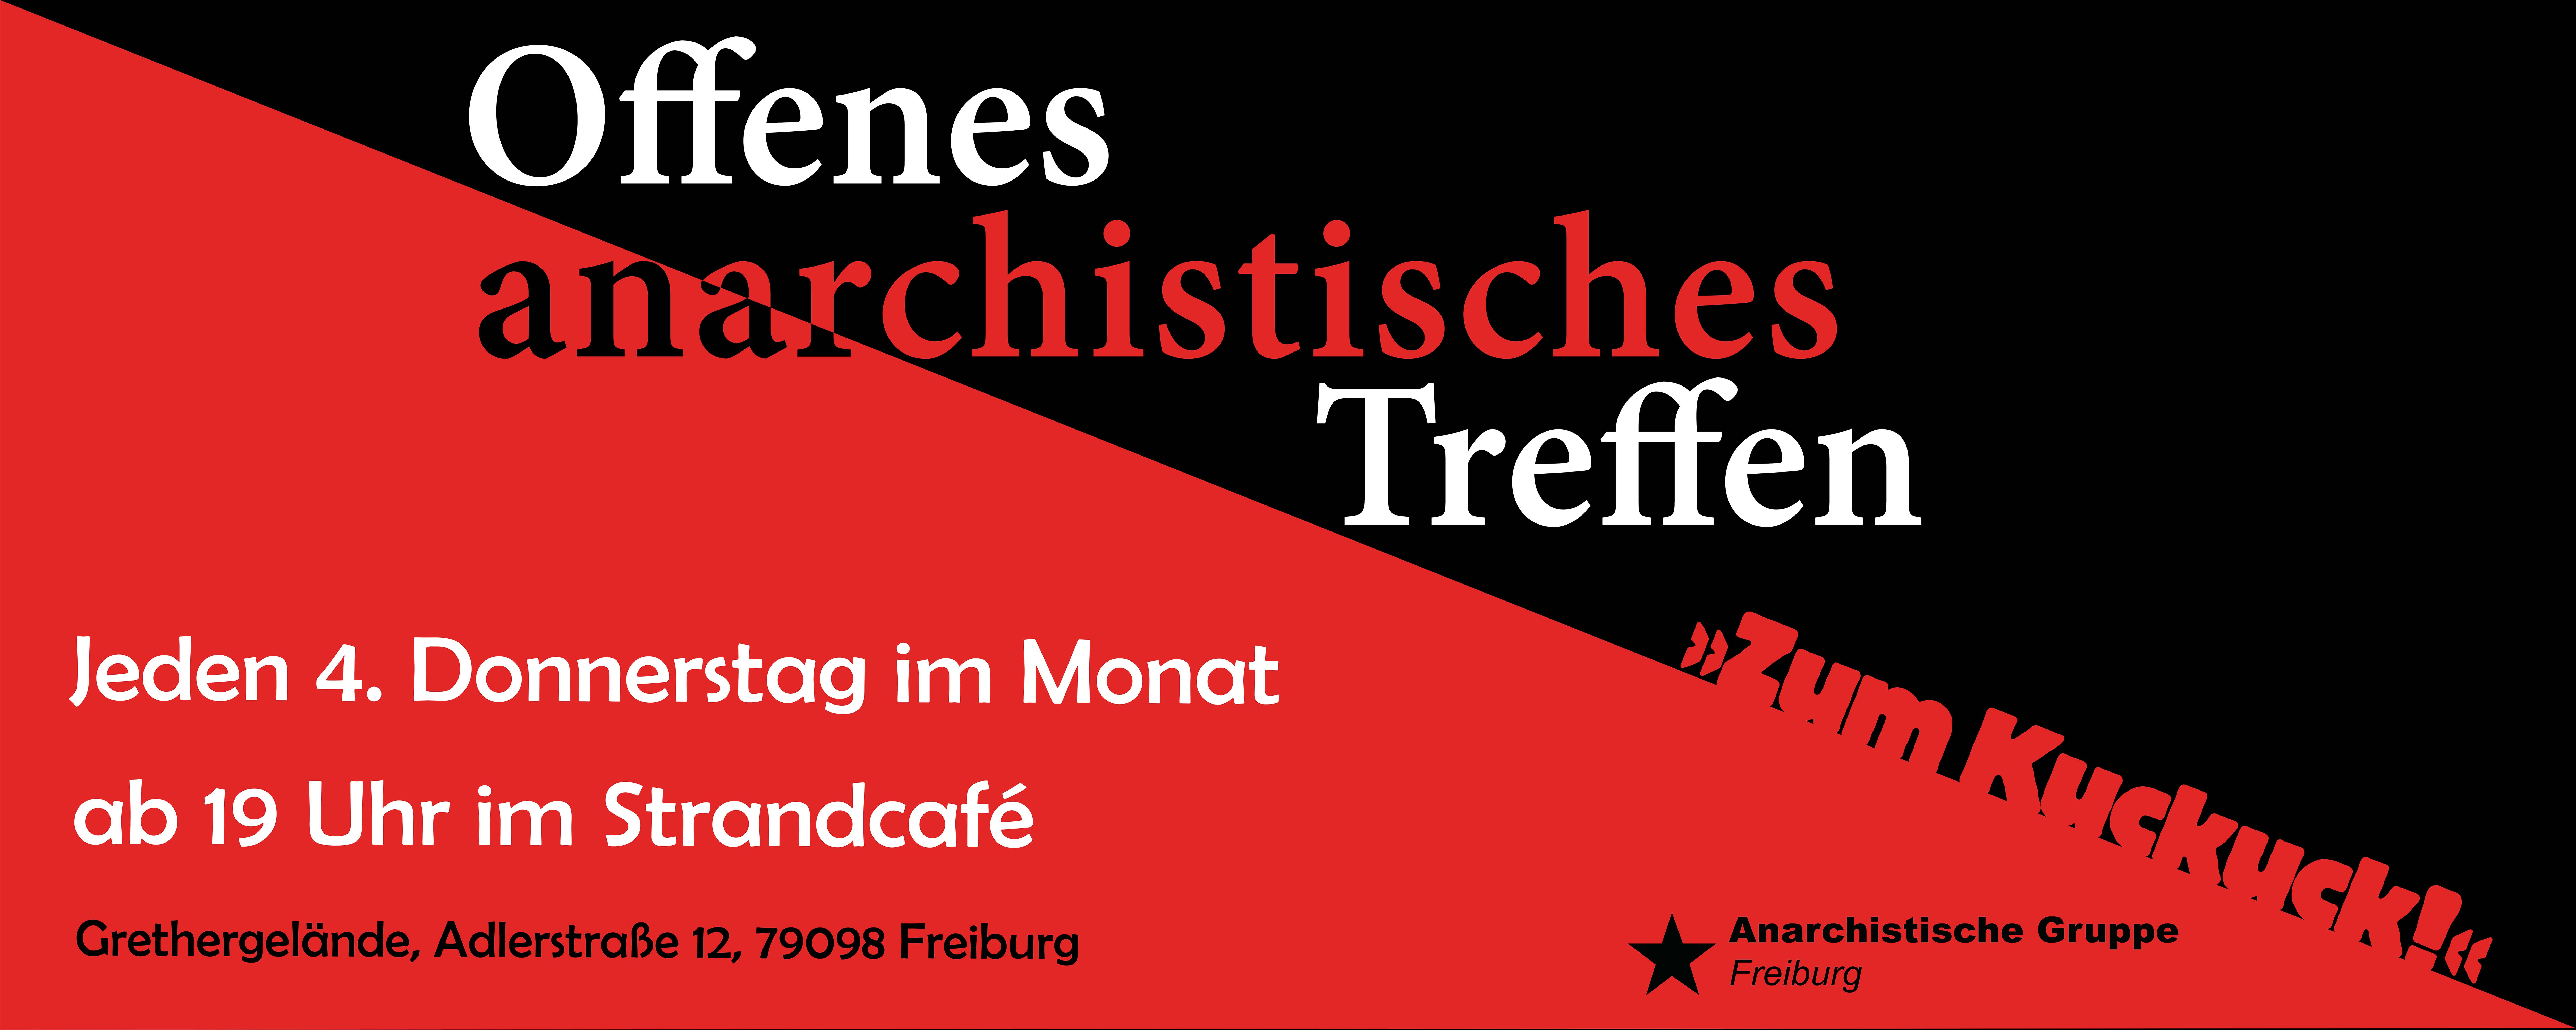 Zum Kuckuck! Drittes offenes anarchistisches Treffen für Freiburg und Region am 28. Juli.